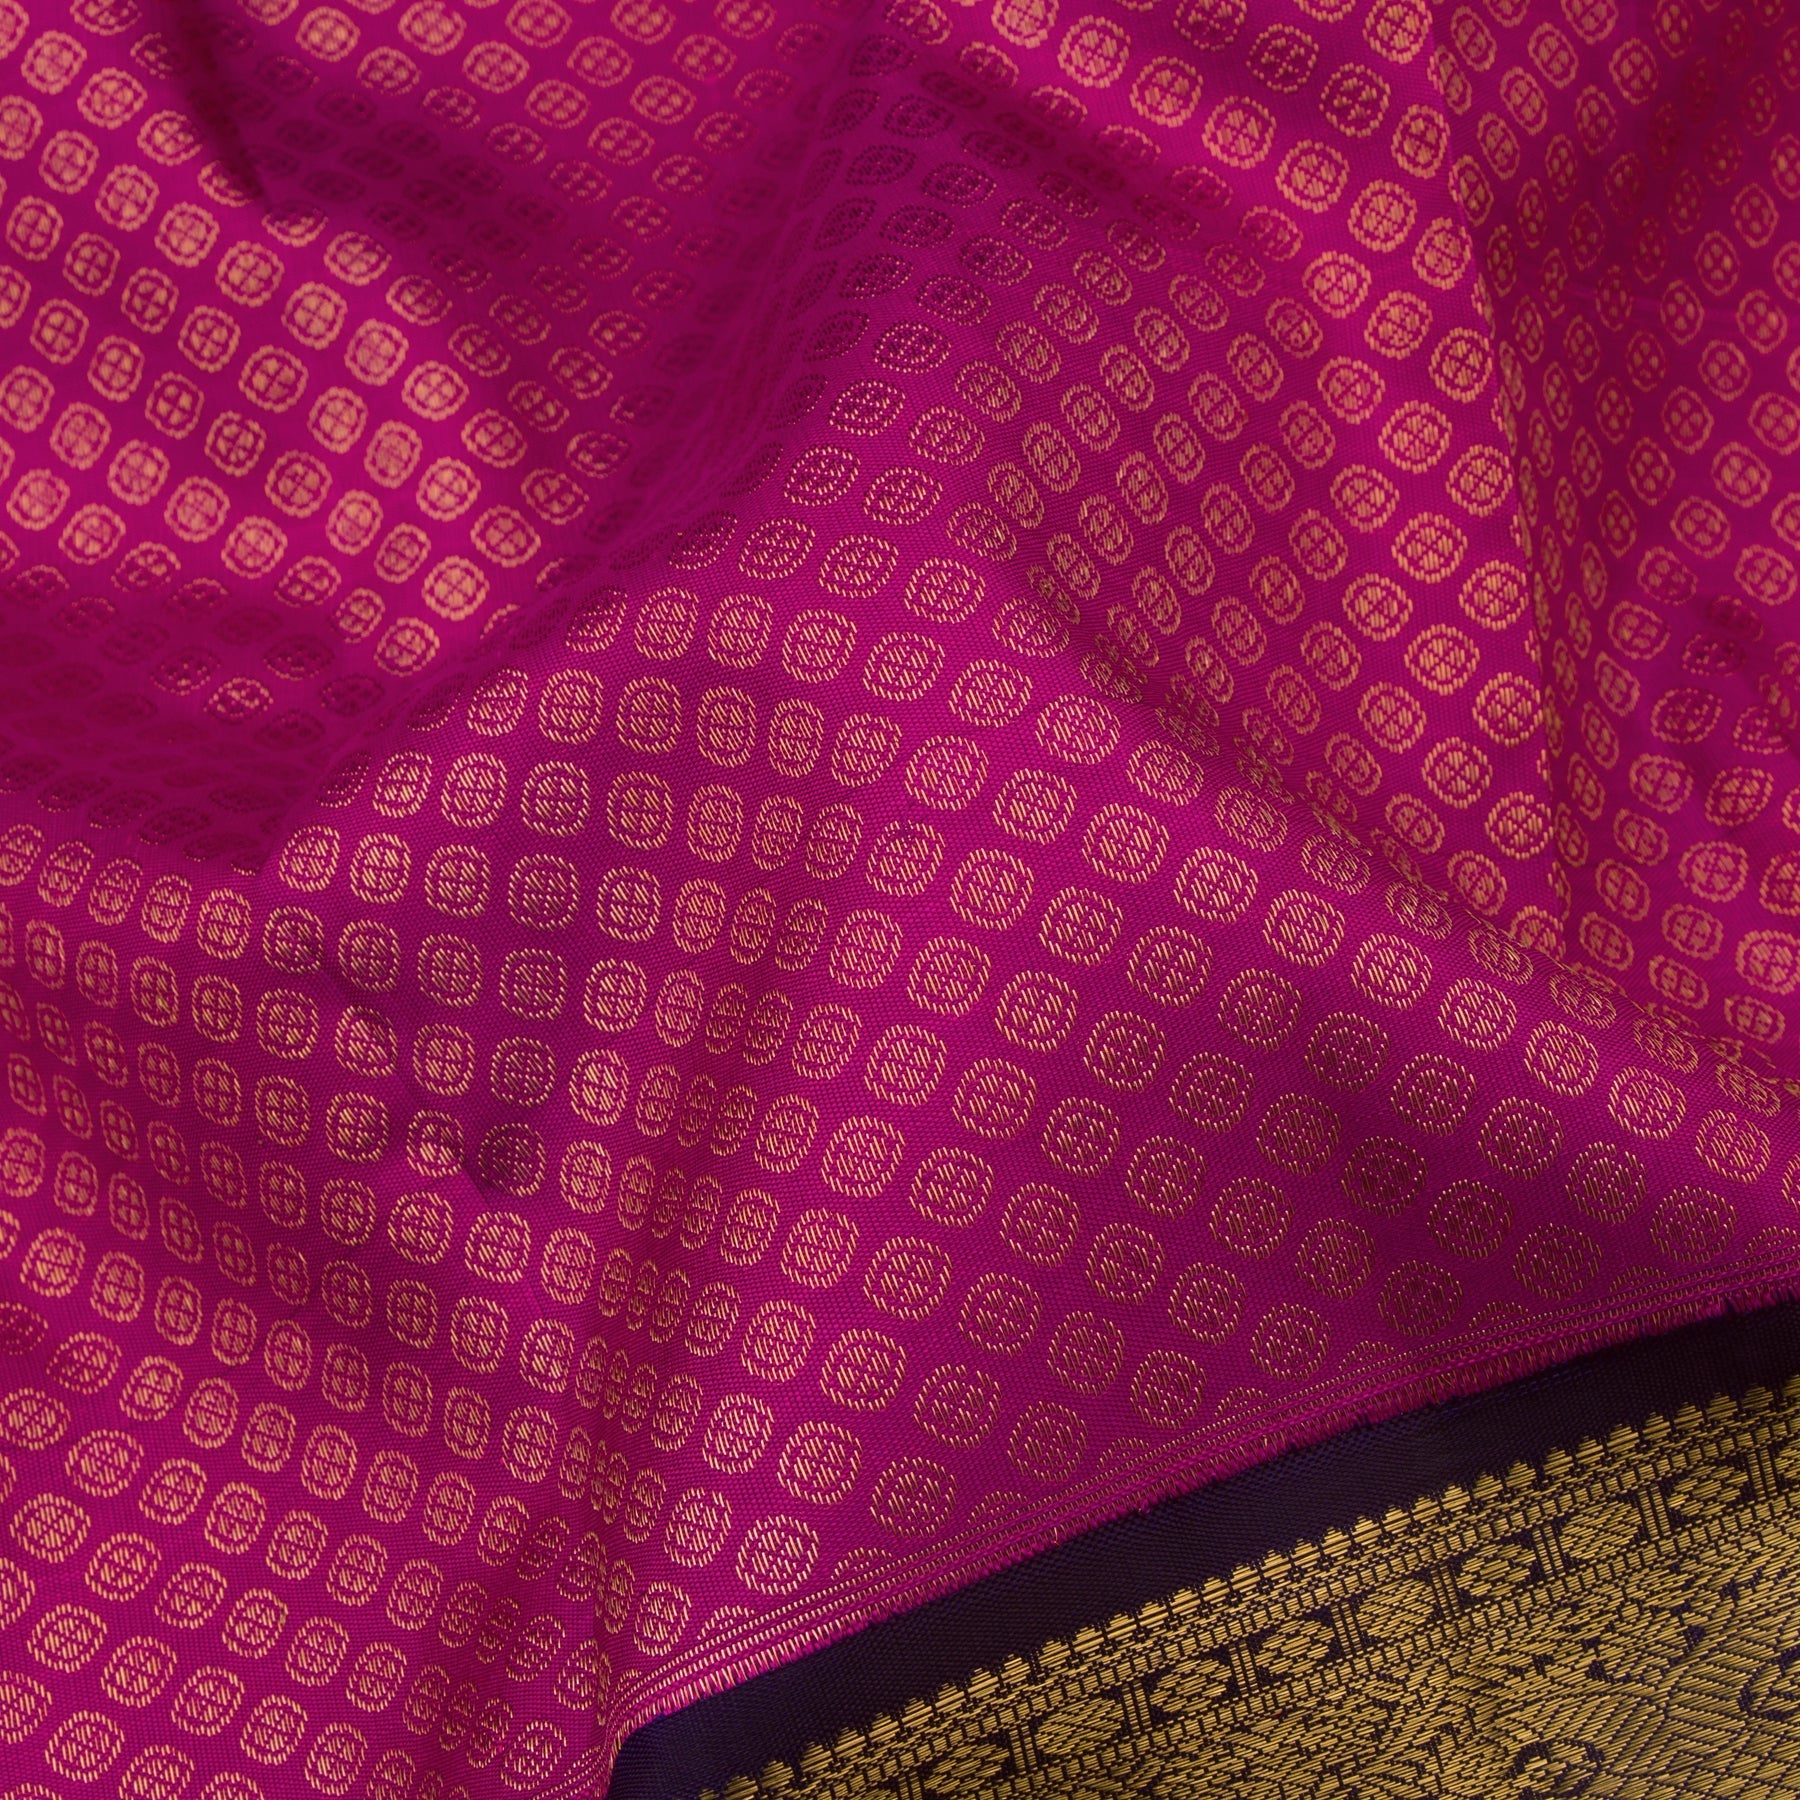 Kanakavalli Kanjivaram Silk Sari 21-110-HS001-04379 - Fabric View